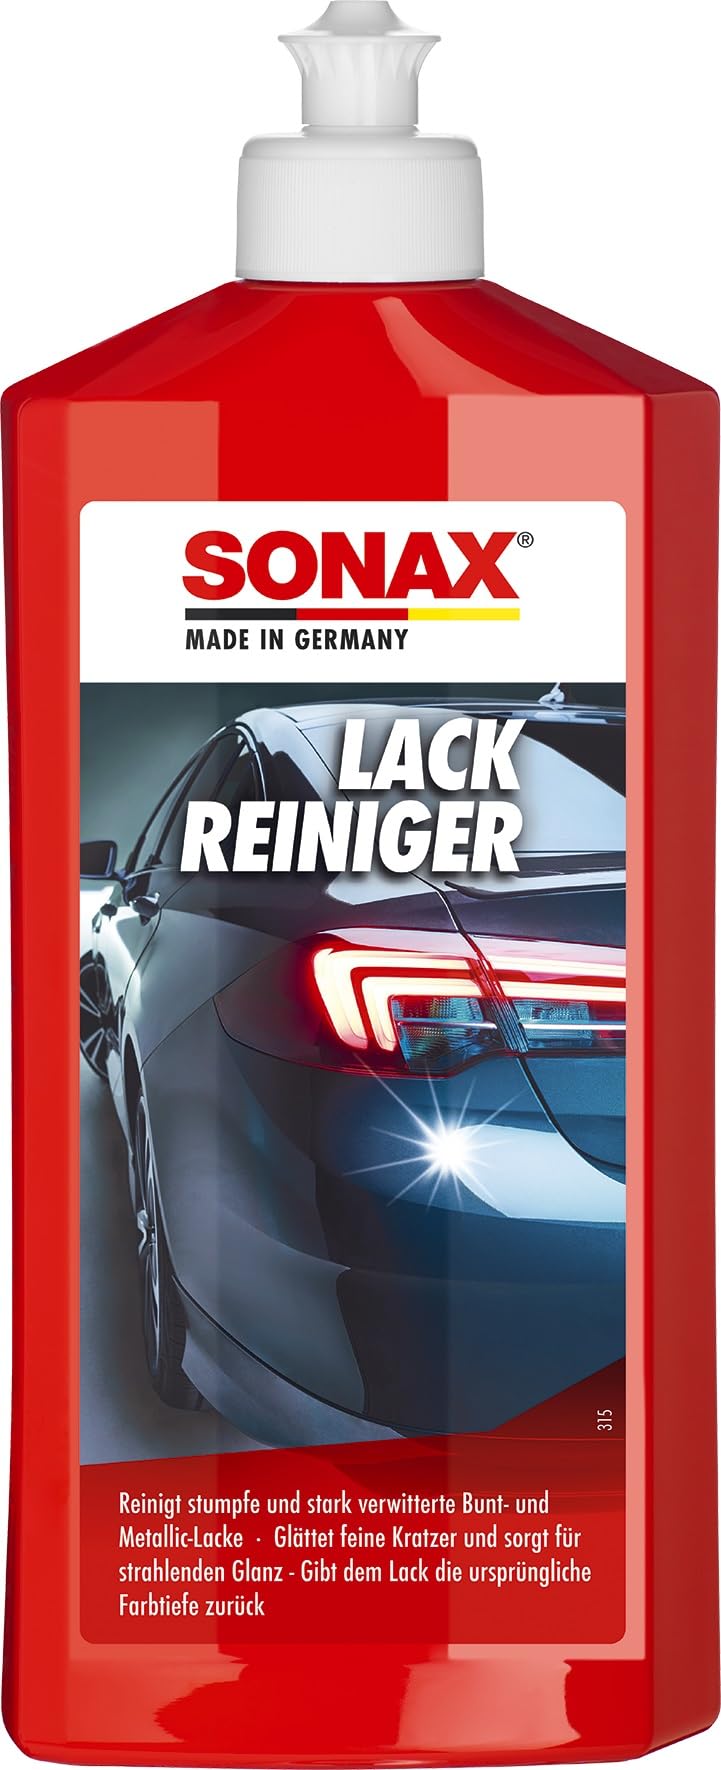 SONAX LackReiniger (500 ml) kraftvolle Politur für stumpfe und stark verwitterte Bunt- und MetallicLacke | Art-Nr. 03022000 von SONAX